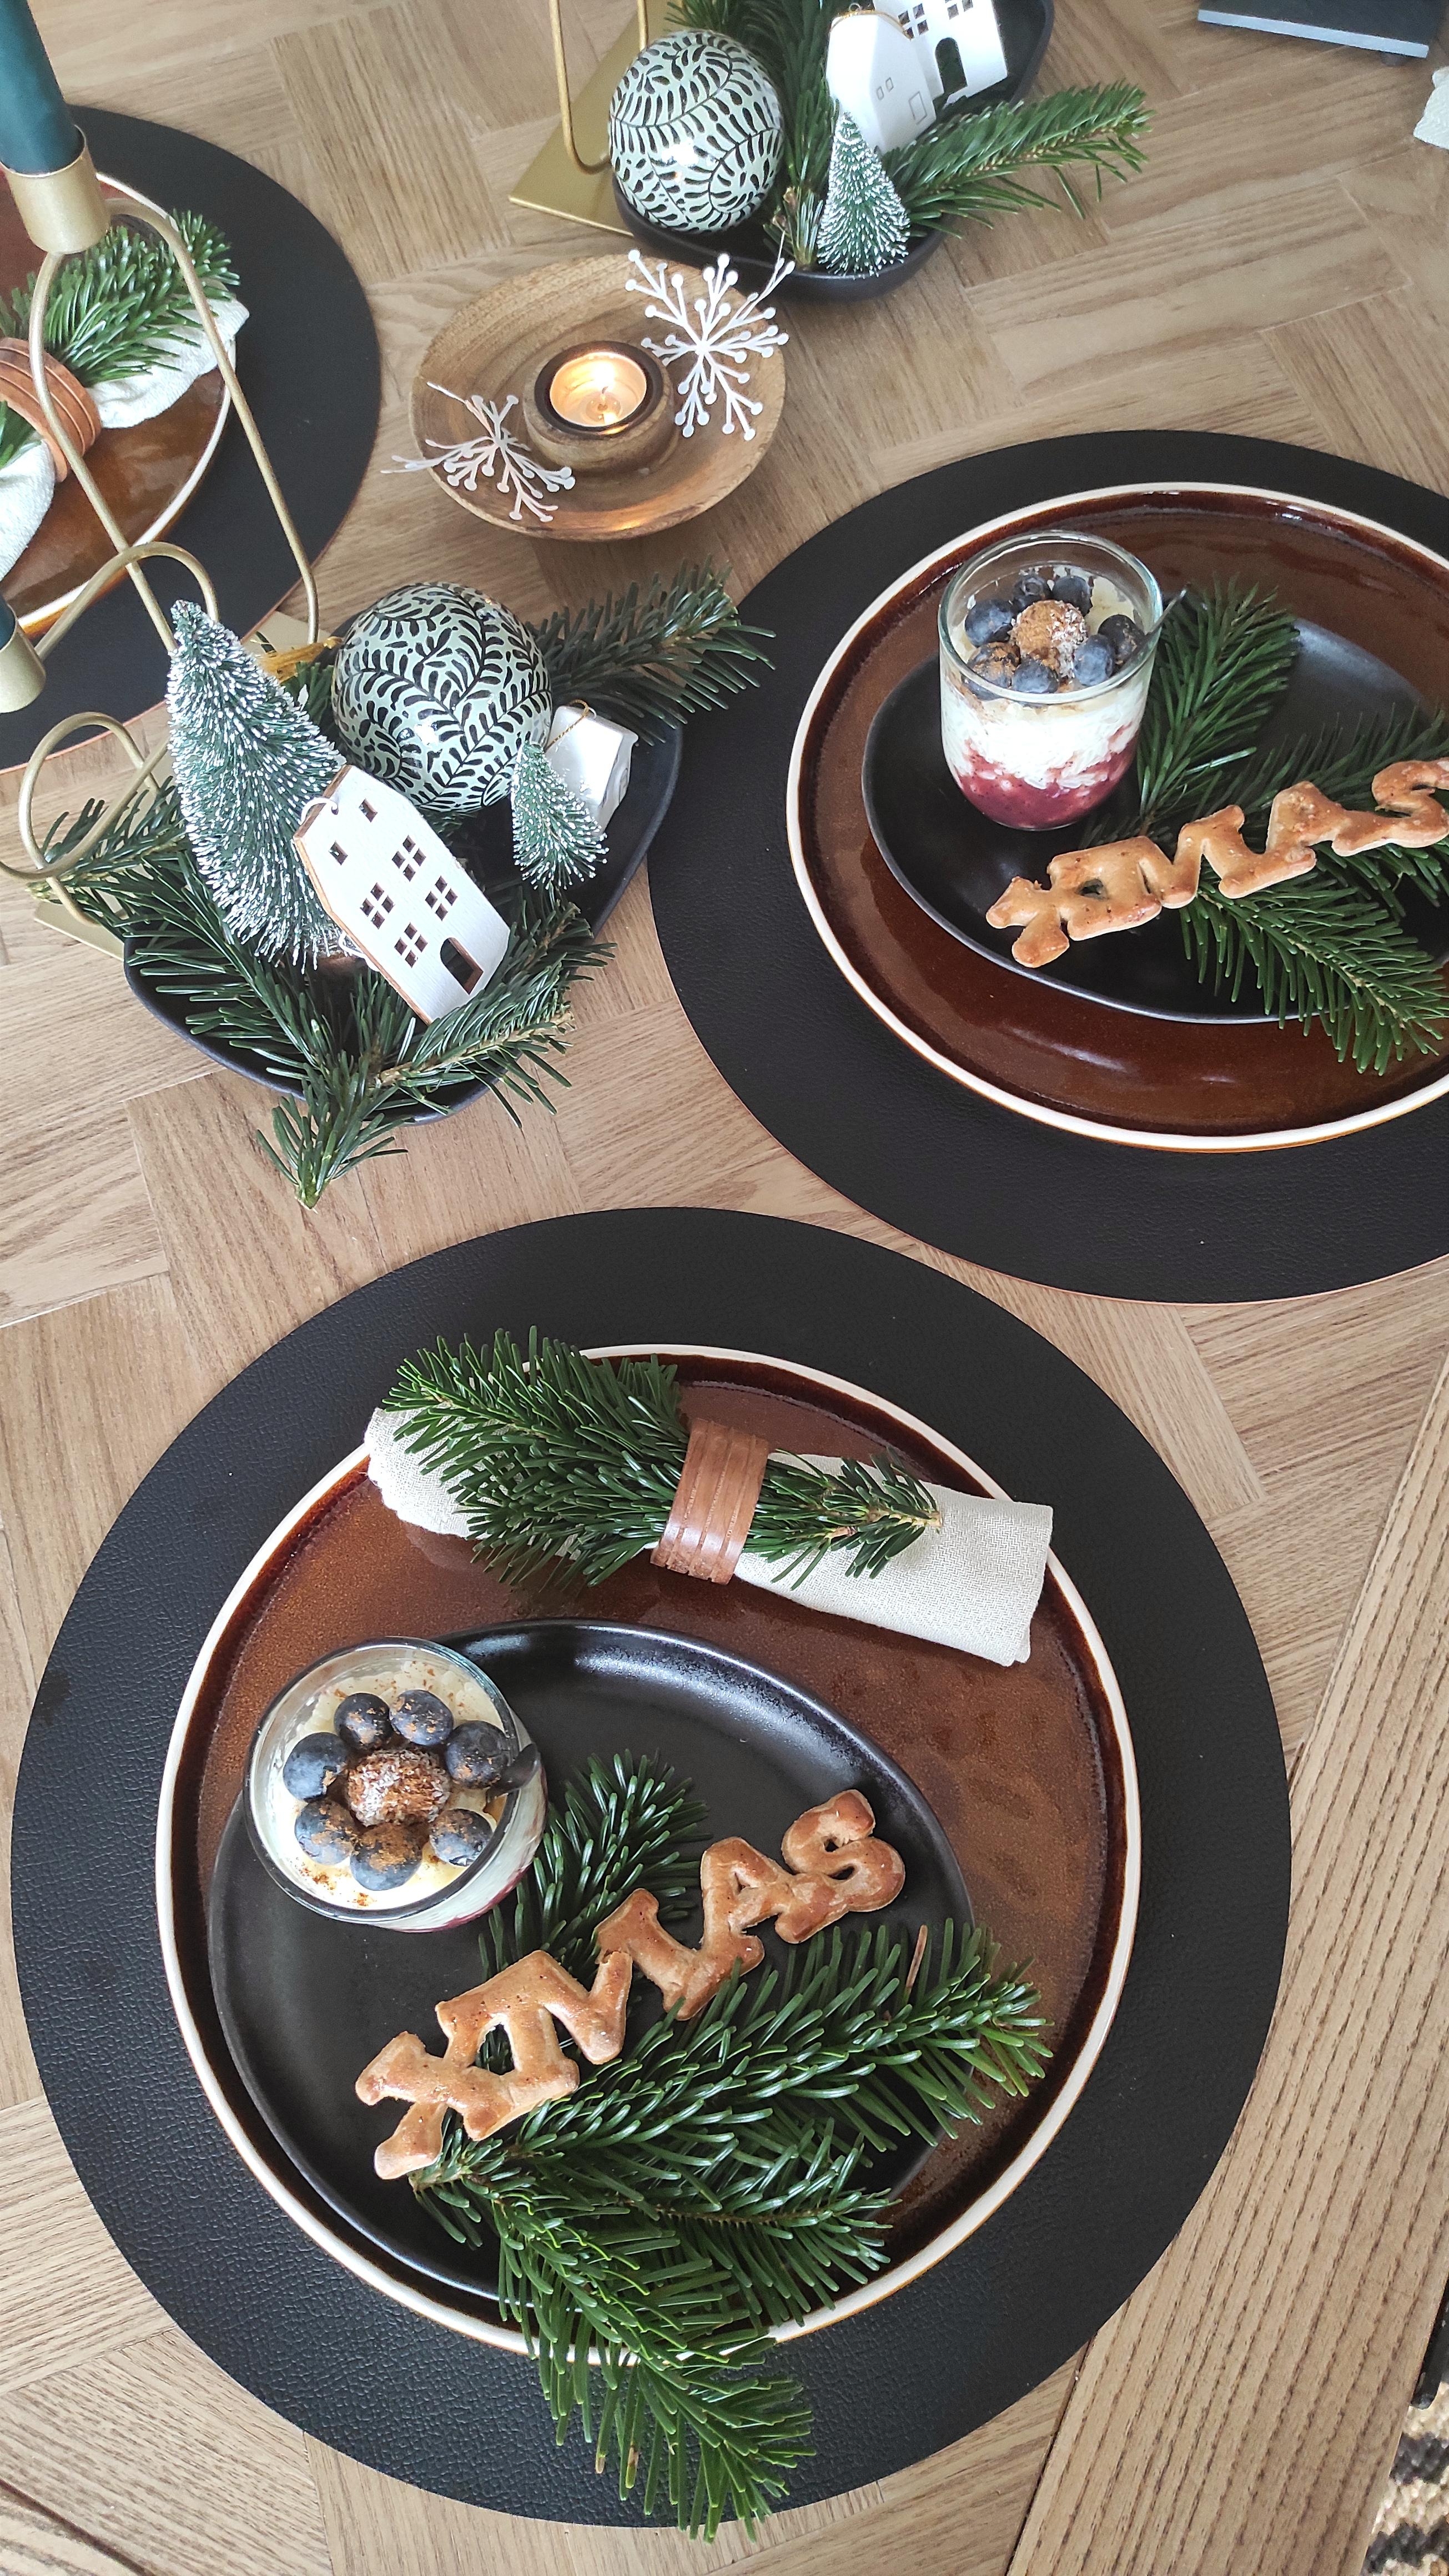 #xmas #froheweihnachten #decor #decoration #tischdeko #tabledecor #fresh #home #homedecor #nachspeise #food #essen #love